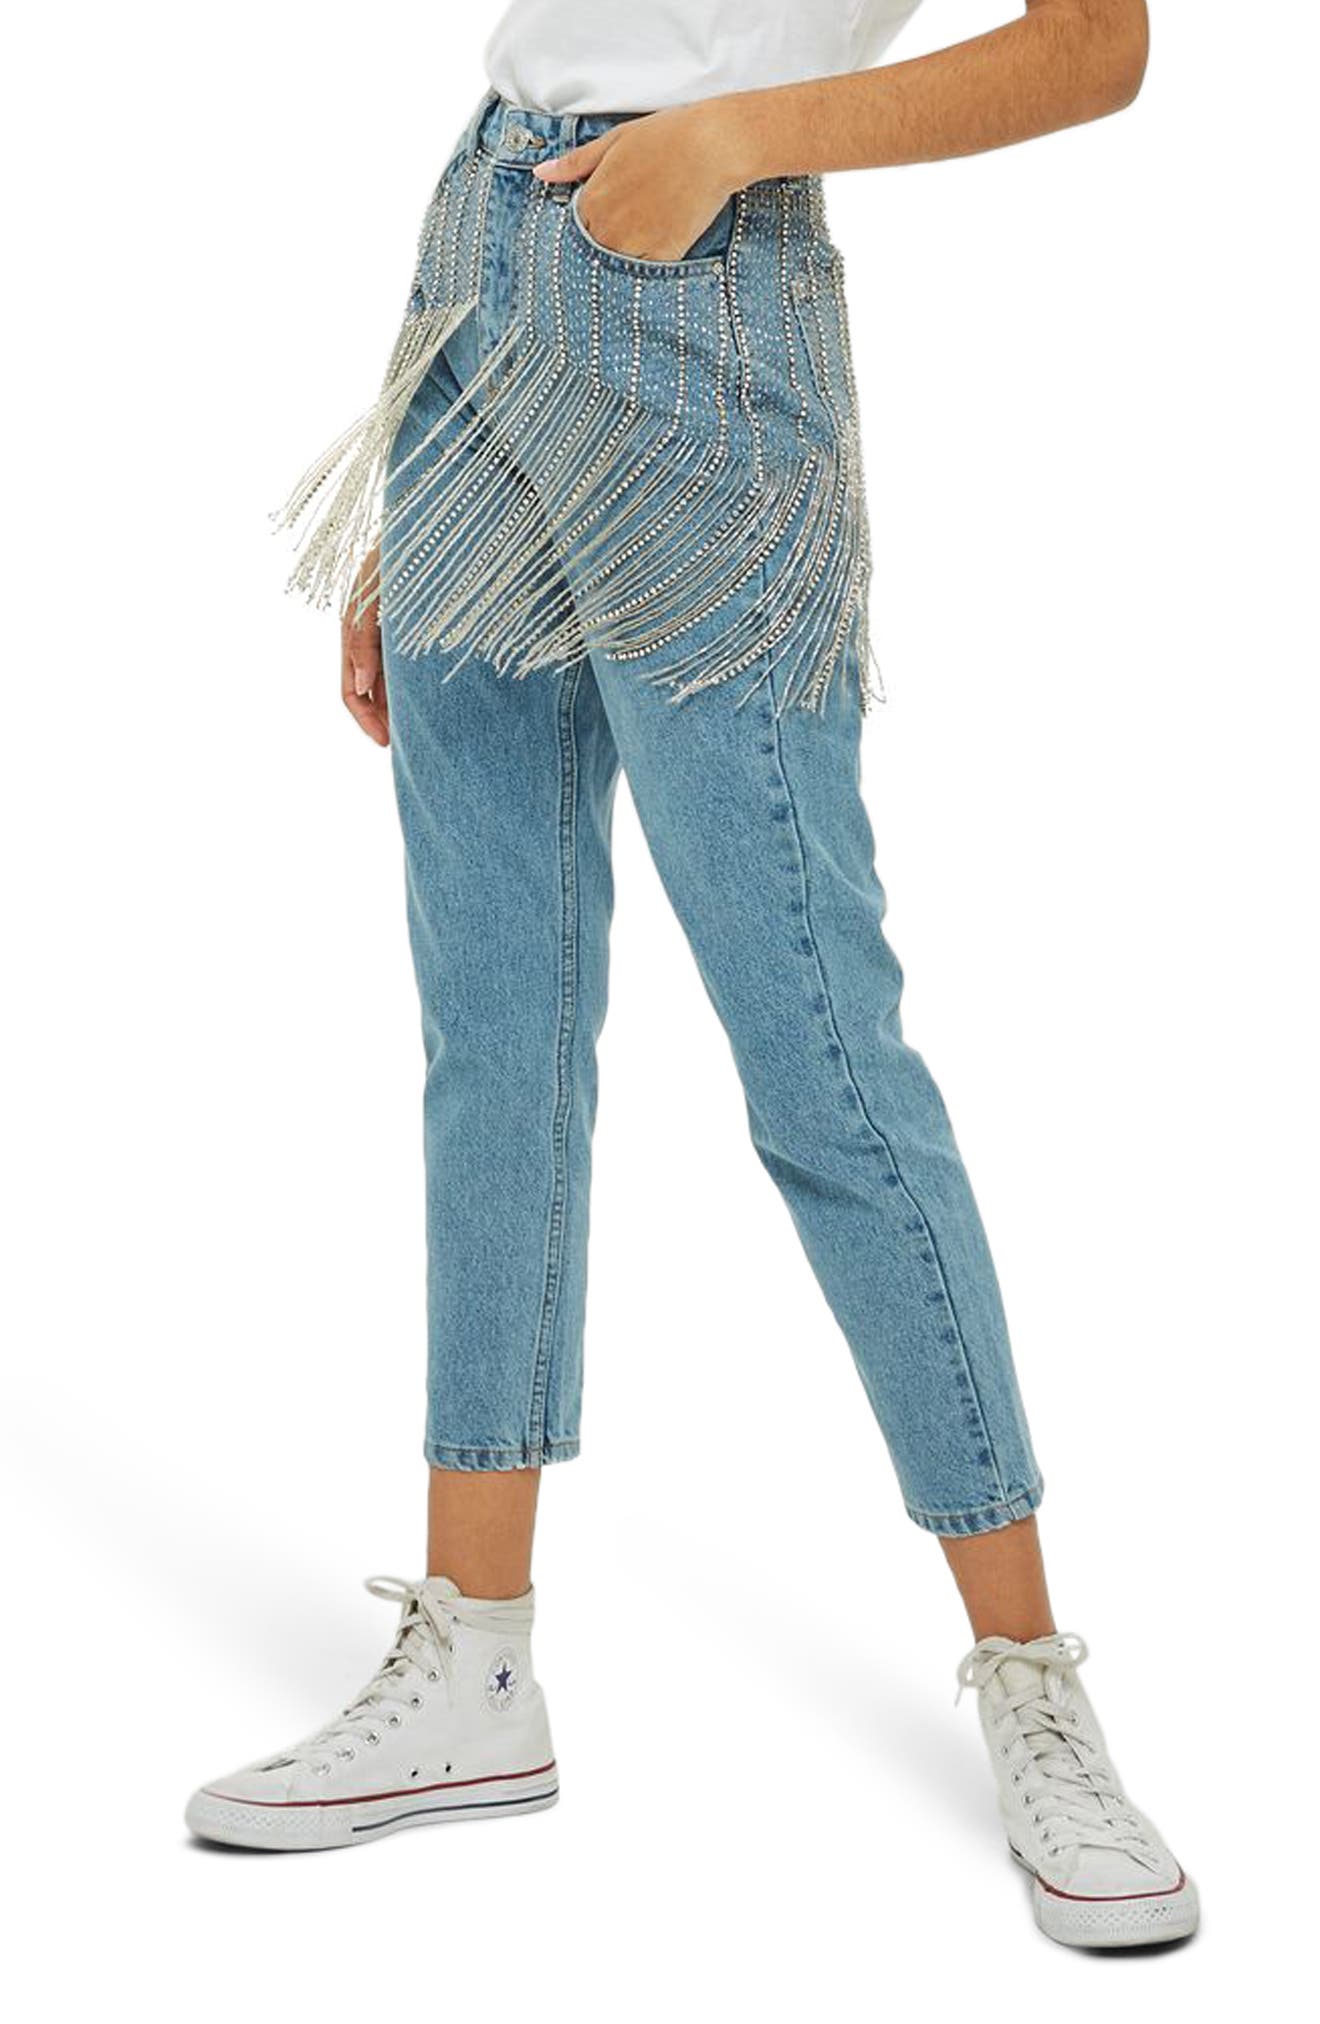 topshop fringe jeans